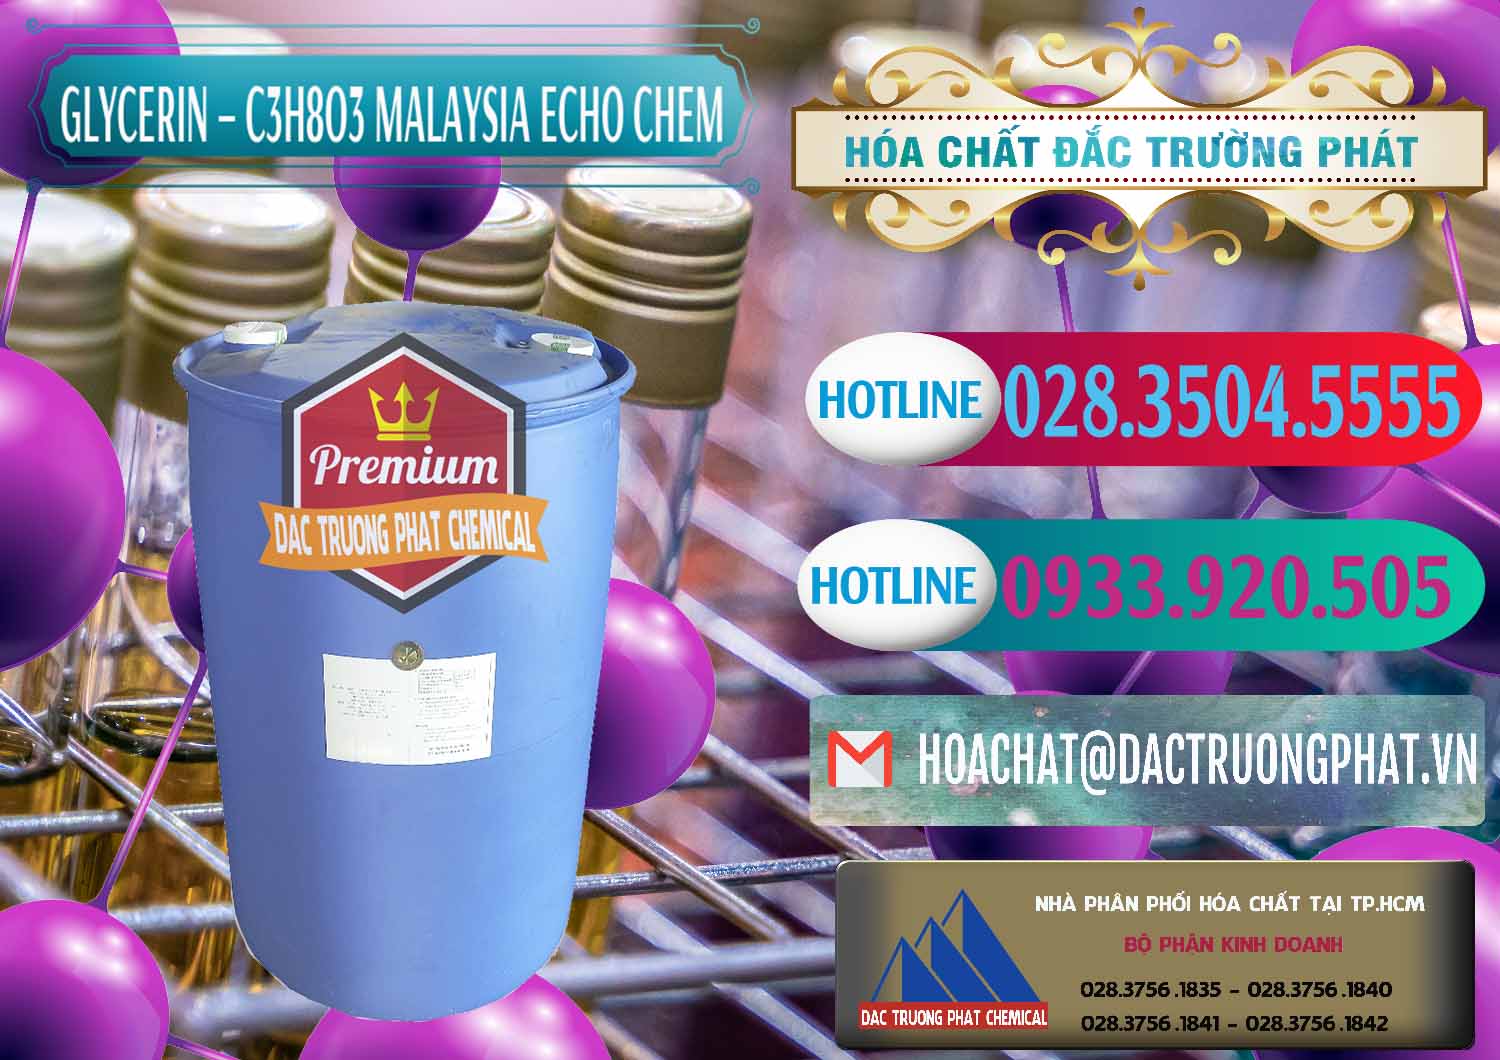 Nơi bán ( cung ứng ) Glycerin – C3H8O3 99.7% Echo Chem Malaysia - 0273 - Công ty cung cấp - kinh doanh hóa chất tại TP.HCM - truongphat.vn